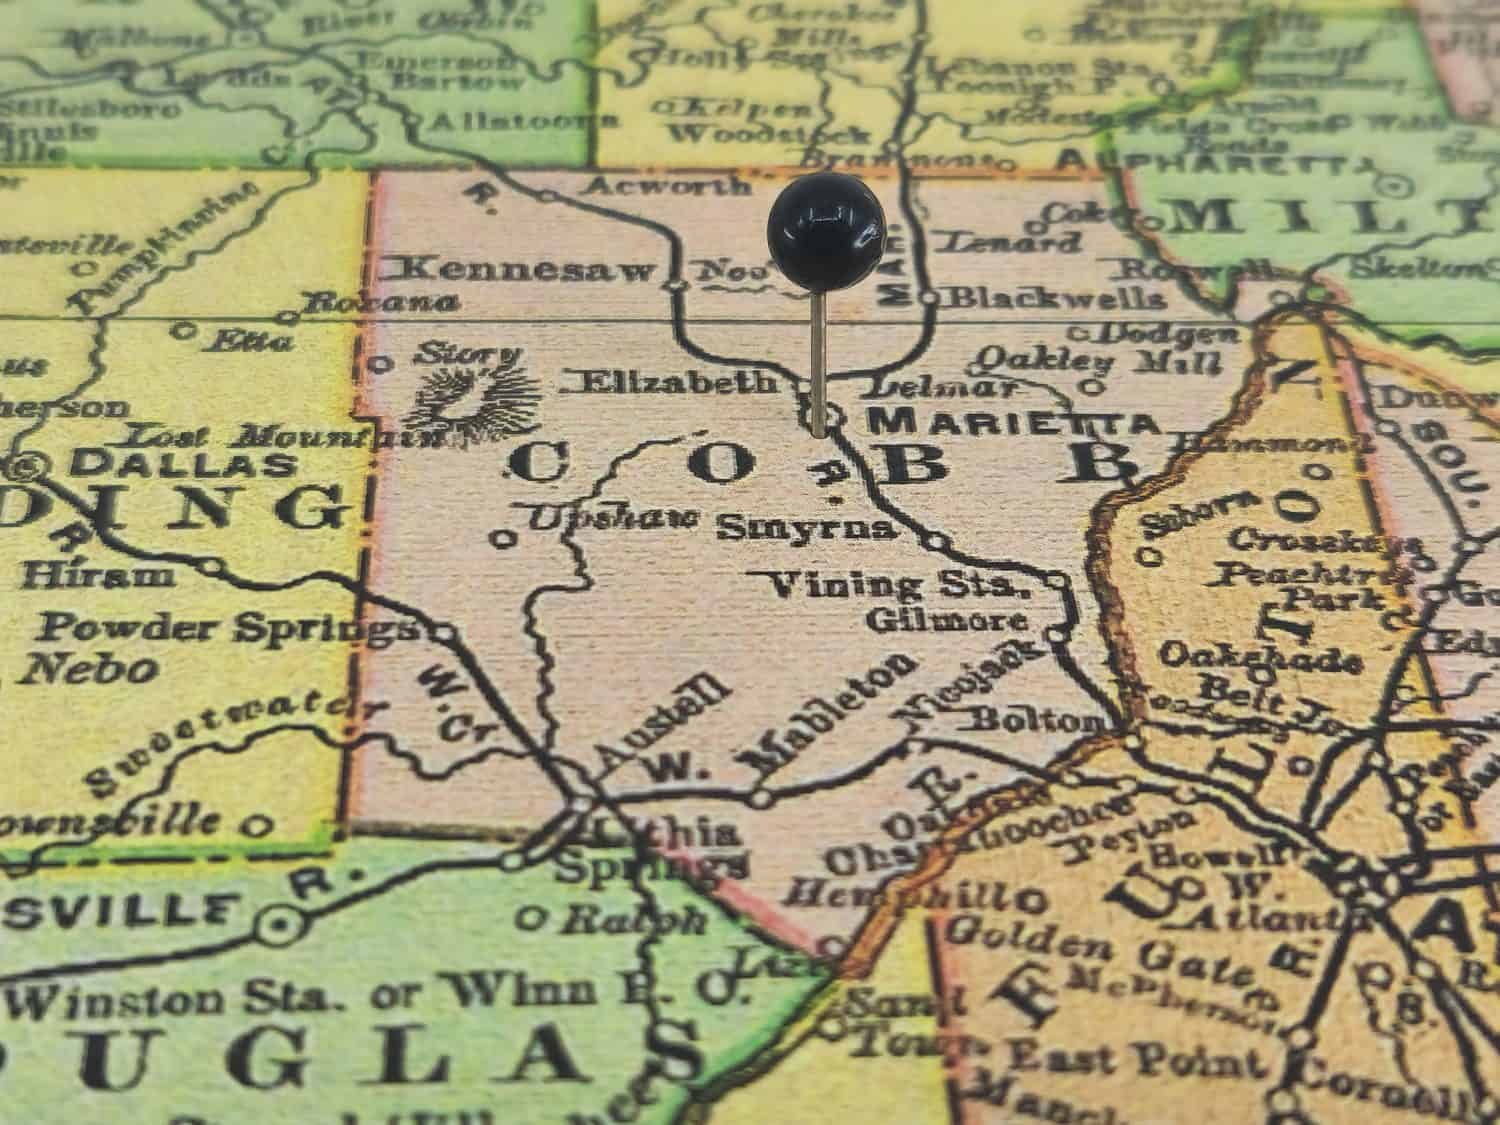 Contea di Cobb, Georgia, contrassegnata da una virata nera su una colorata mappa vintage.  Il capoluogo della contea si trova nella città di Marietta, GA.